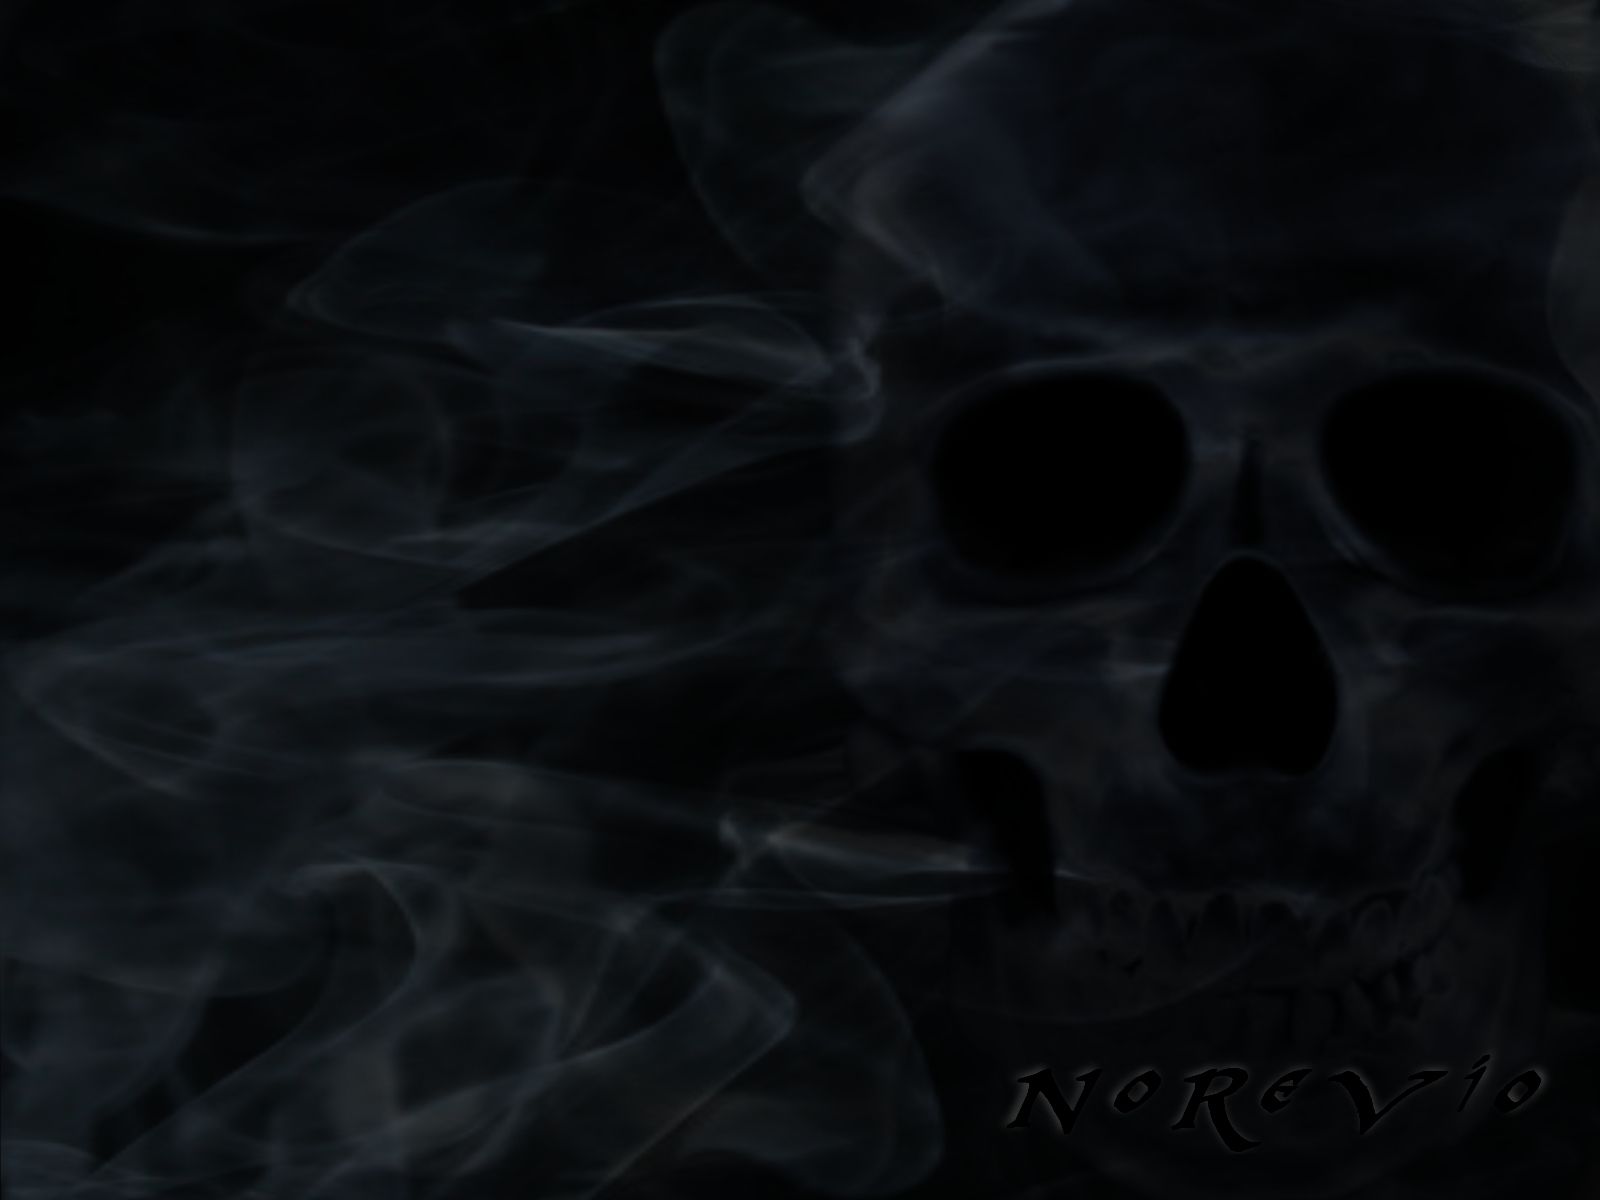 HD smoke skull wallpapers  Peakpx